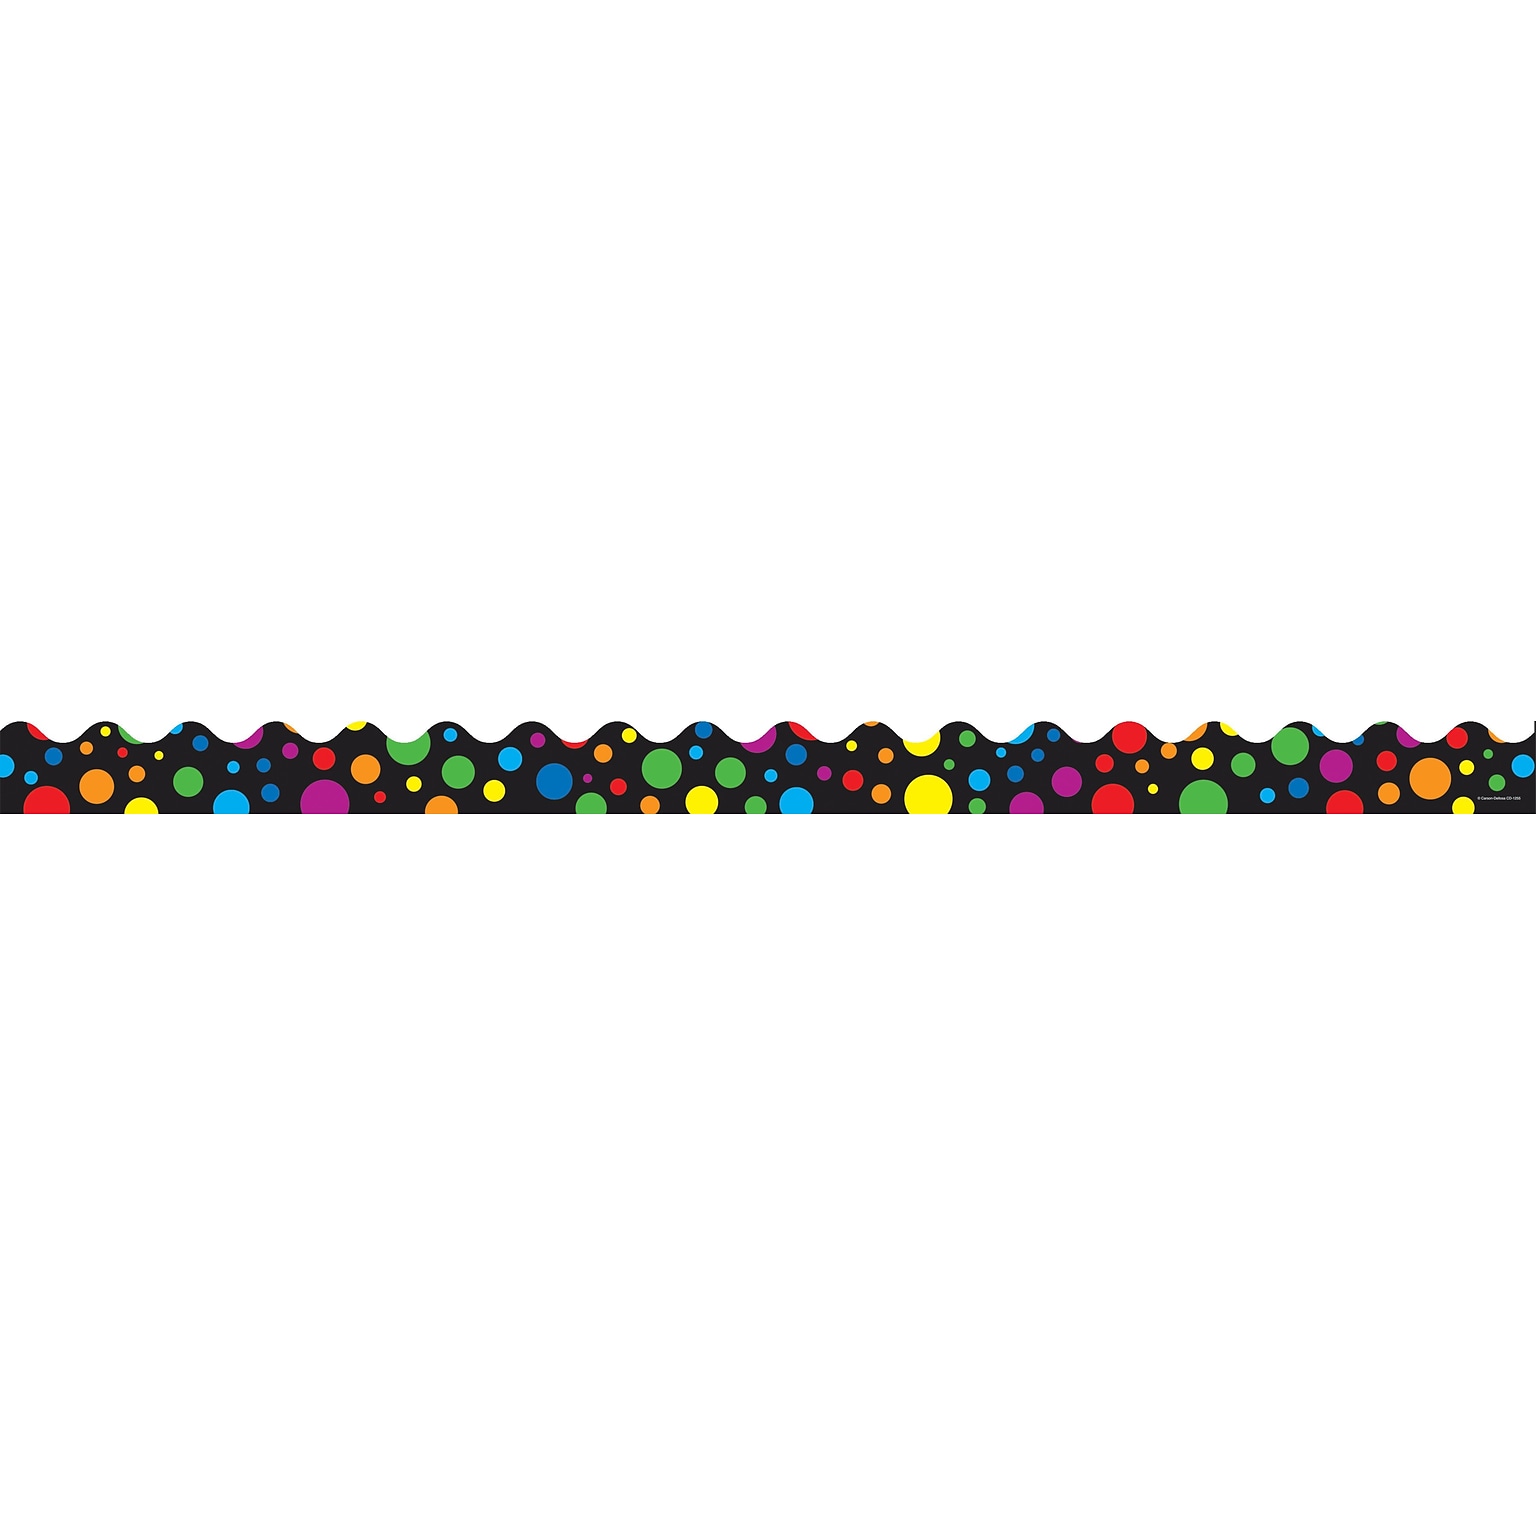 Carson-Dellosa 36 x 2.25 Scalloped, Big Rainbow Dots Borders 13 Strips (1255)